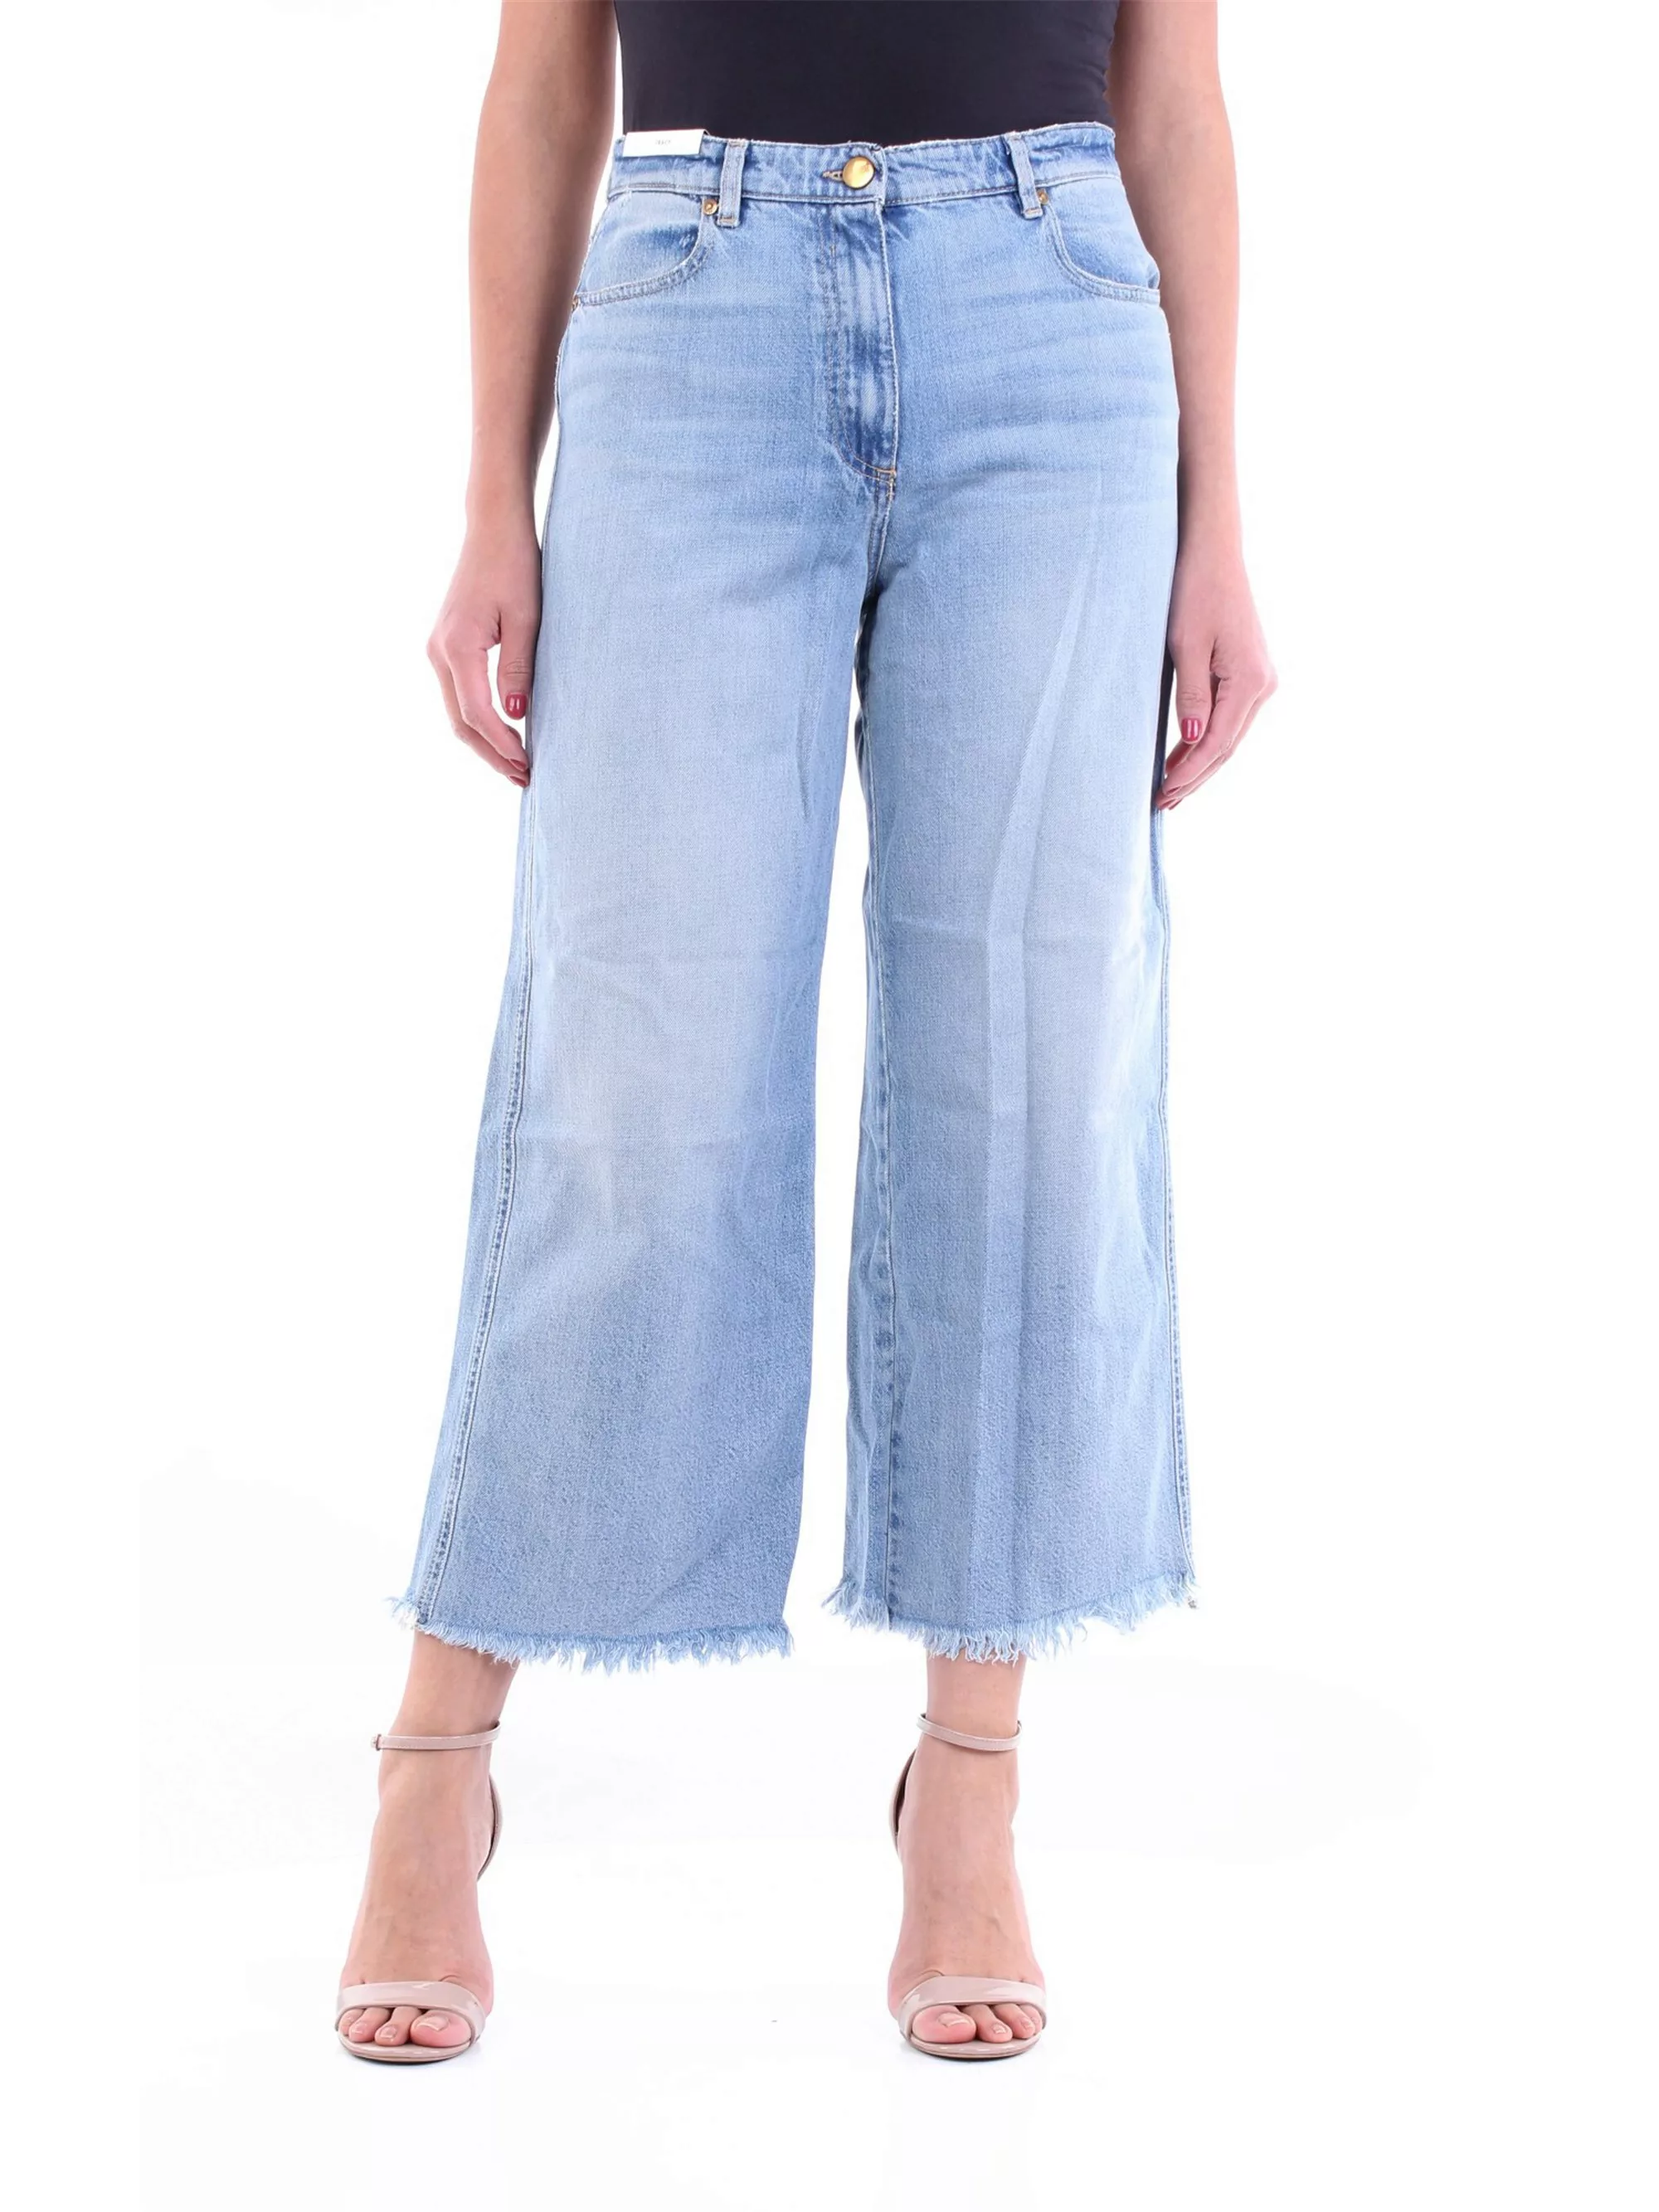 PT TORINO verkürzte Damen Leichte Jeans günstig online kaufen